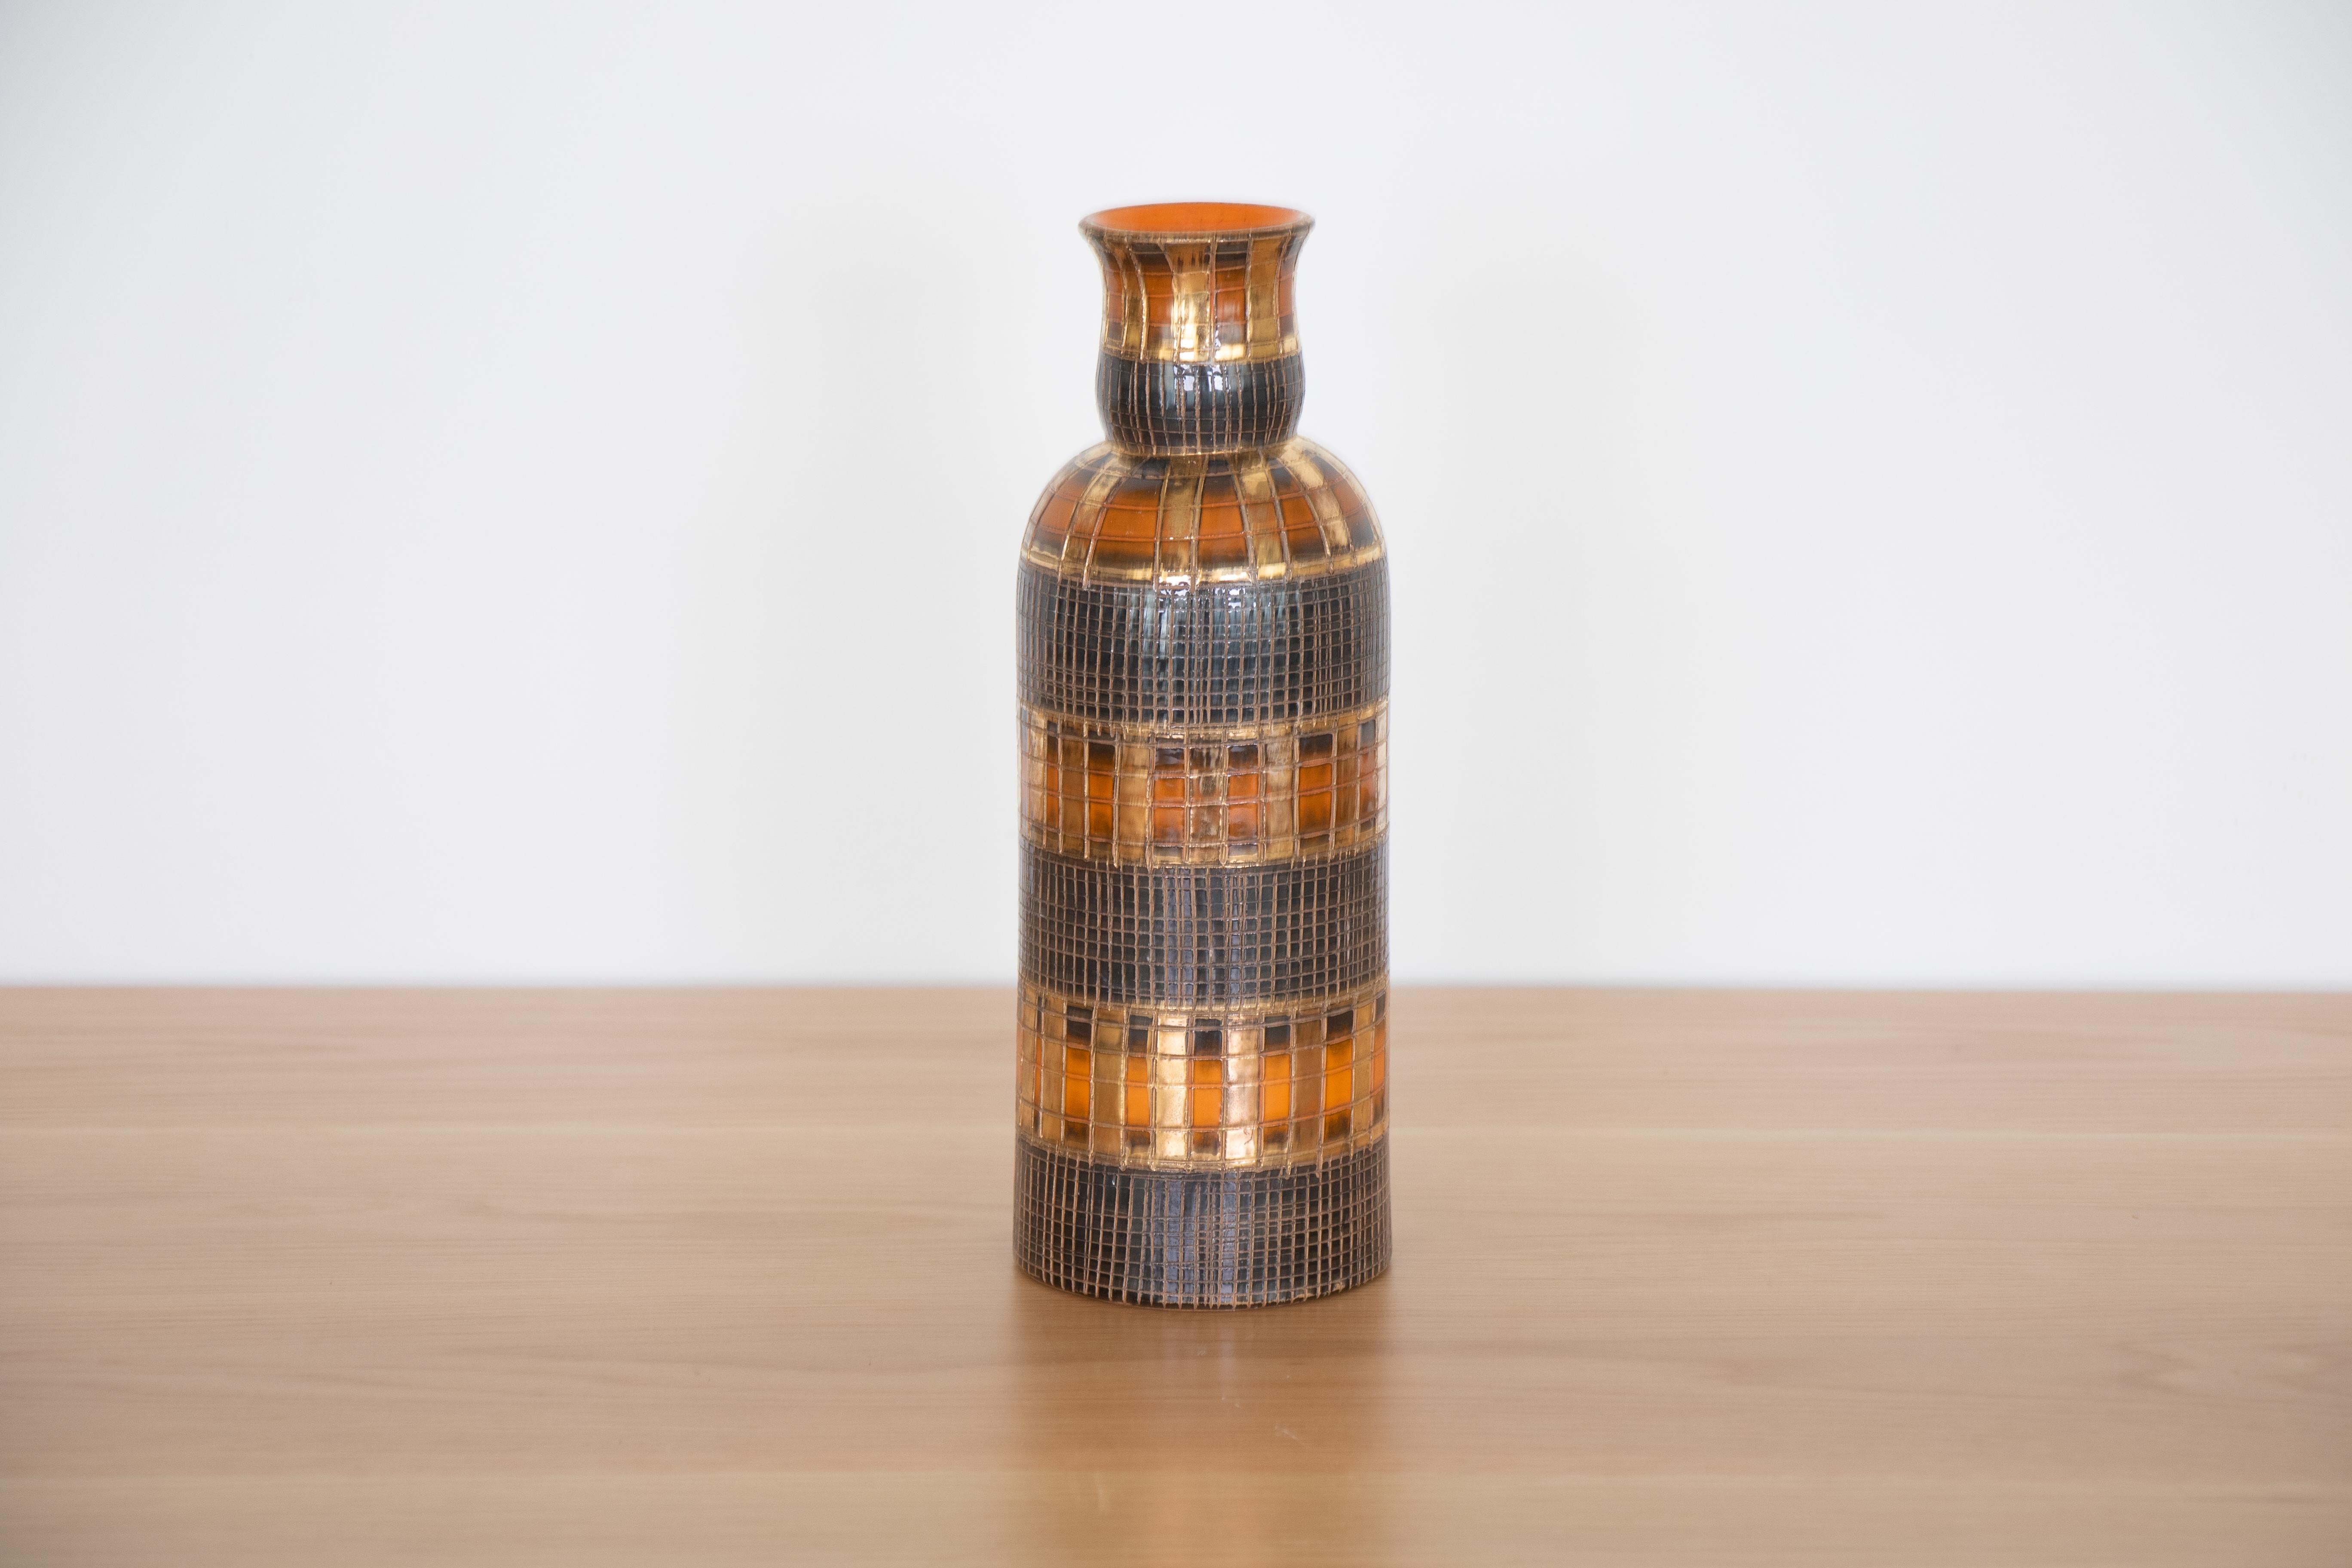 Italian bottle vase by Aldo Londi for Bitossi. Part of the 